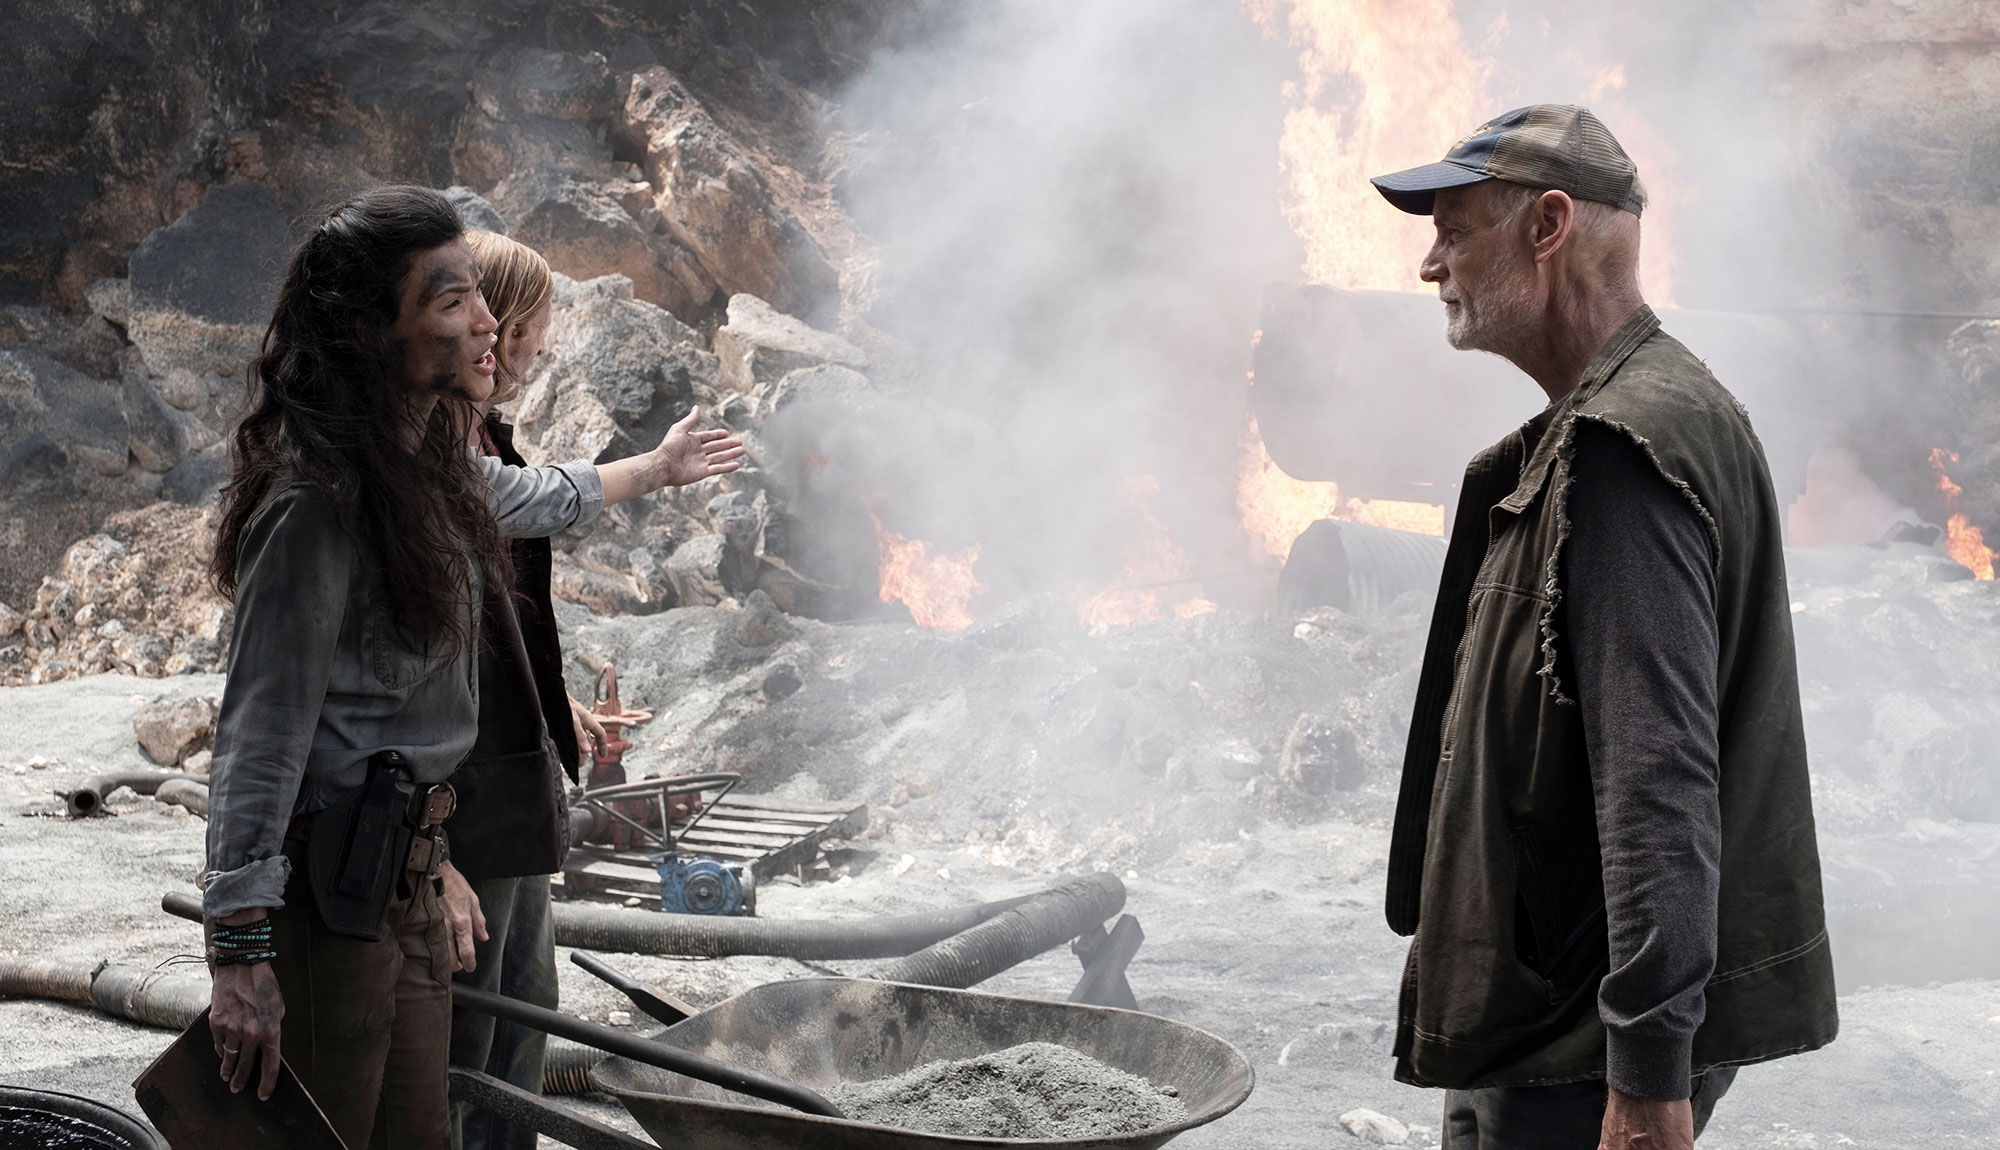 Fear the Walking Dead Episode 513 Images Tease An Oil Field Showdown